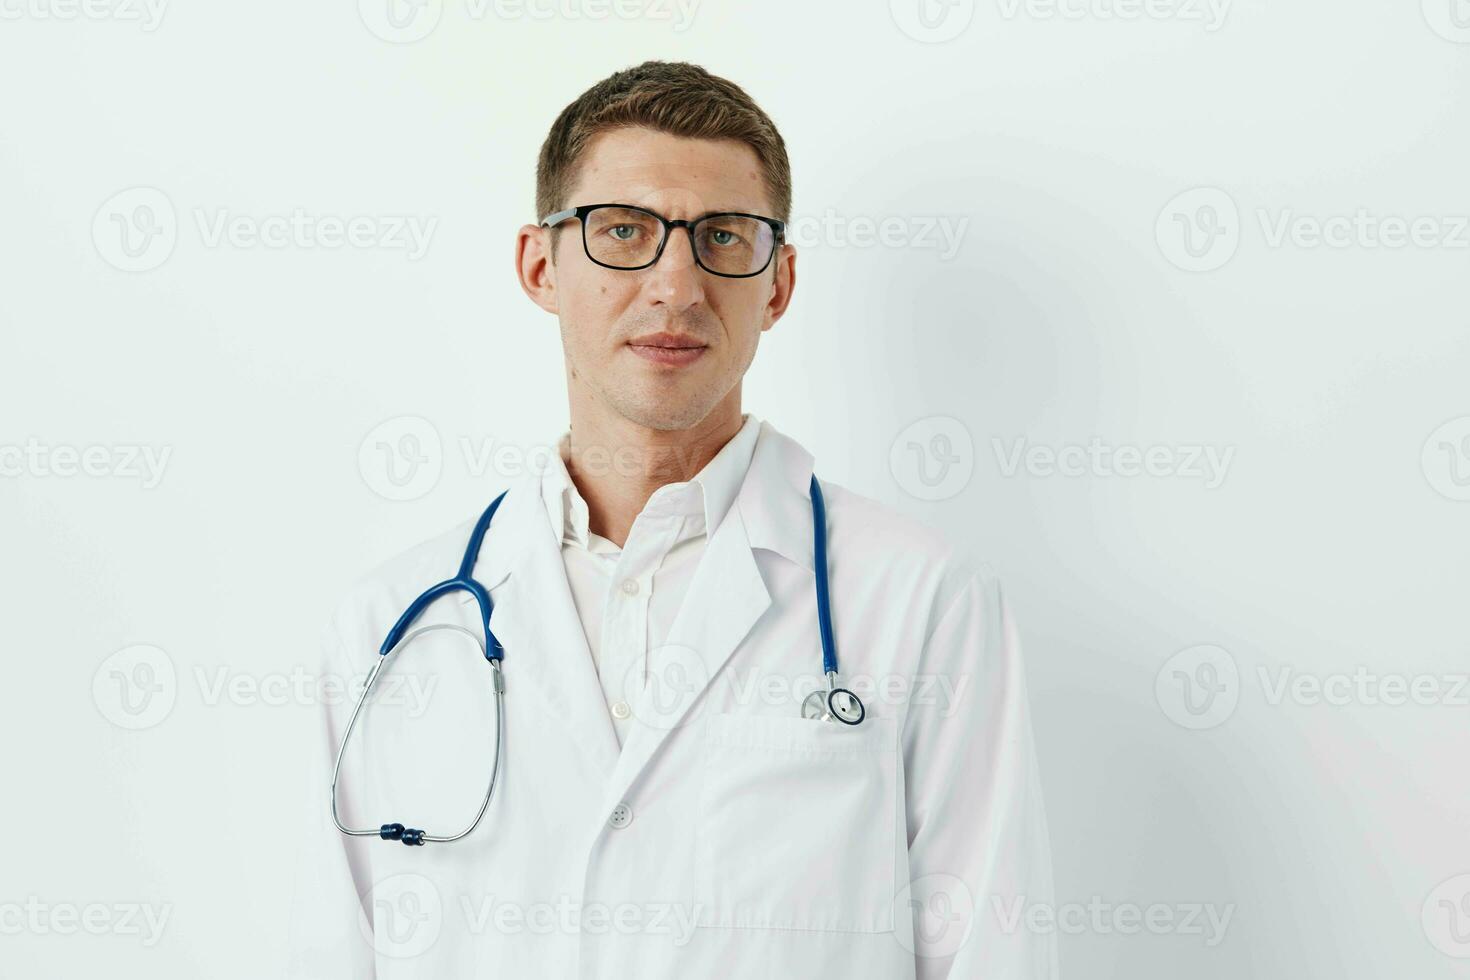 hospital perícia praticante maduro homens saúde especialista médico Veja médico terapeuta foto